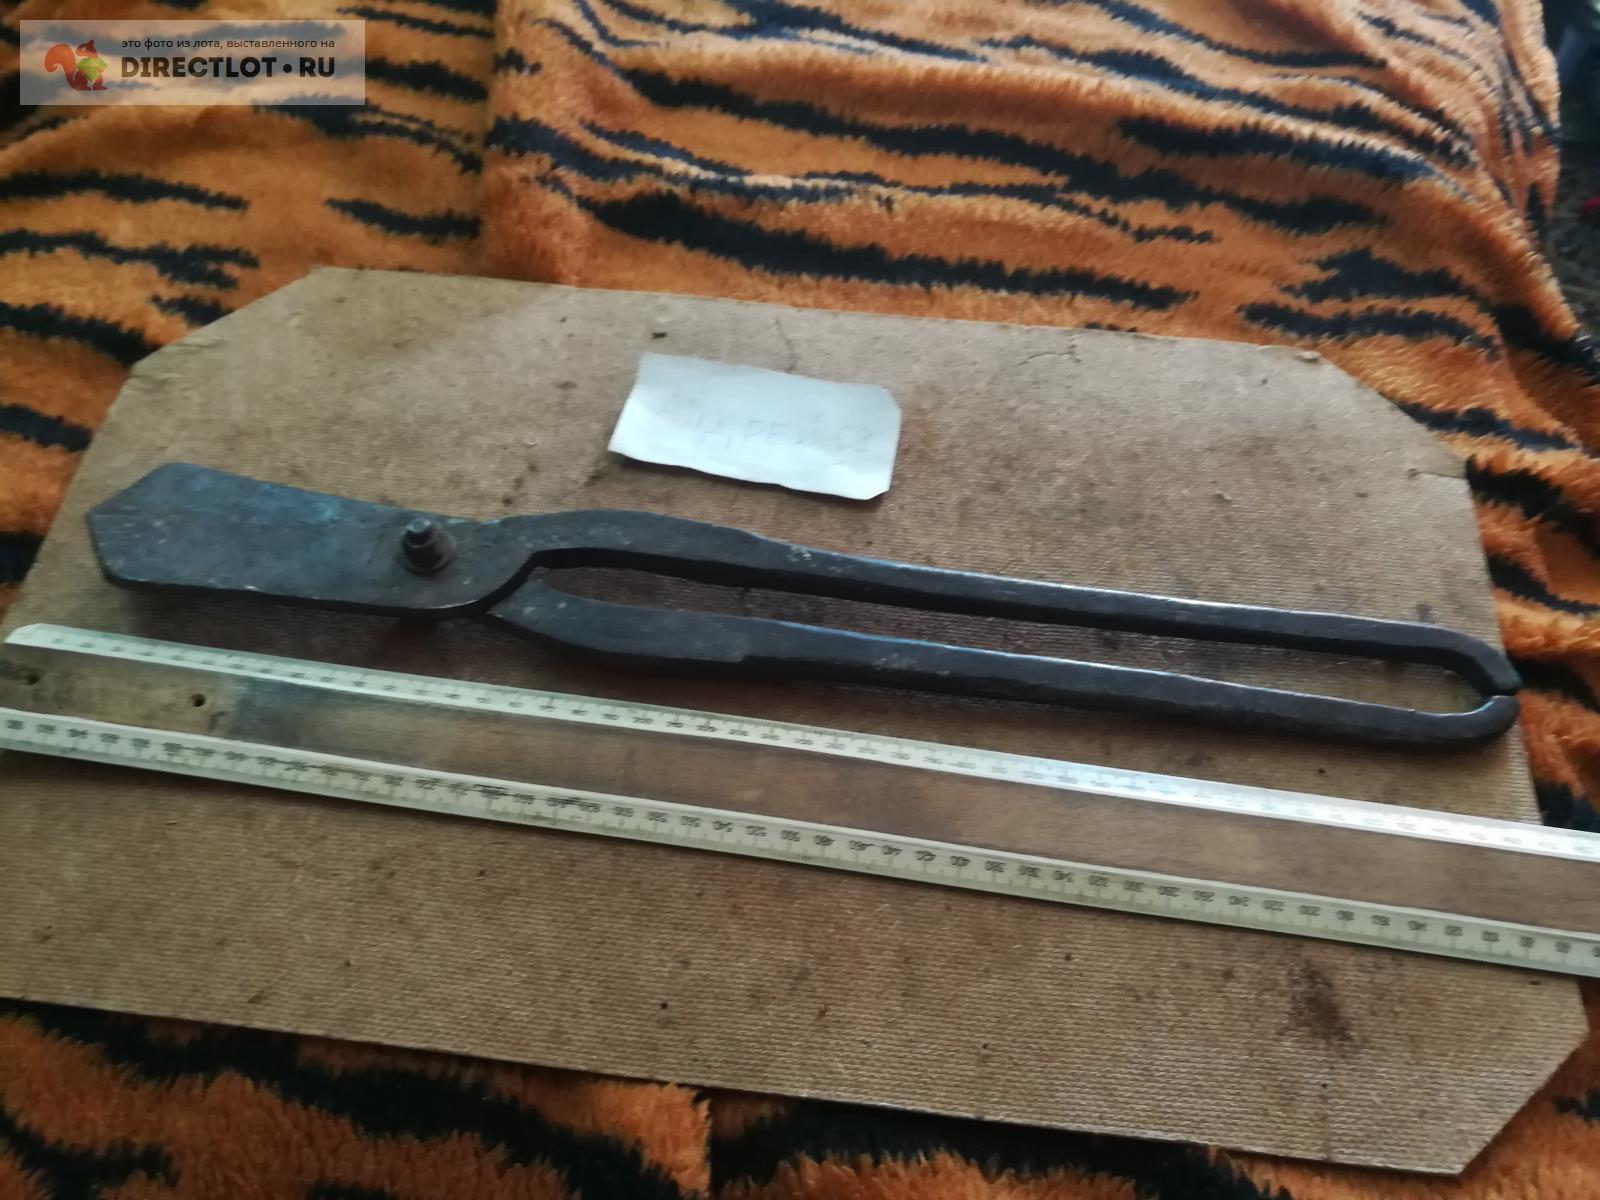 ножницы по металлу большие  в Омске цена 250 Р на DIRECTLOT.RU .